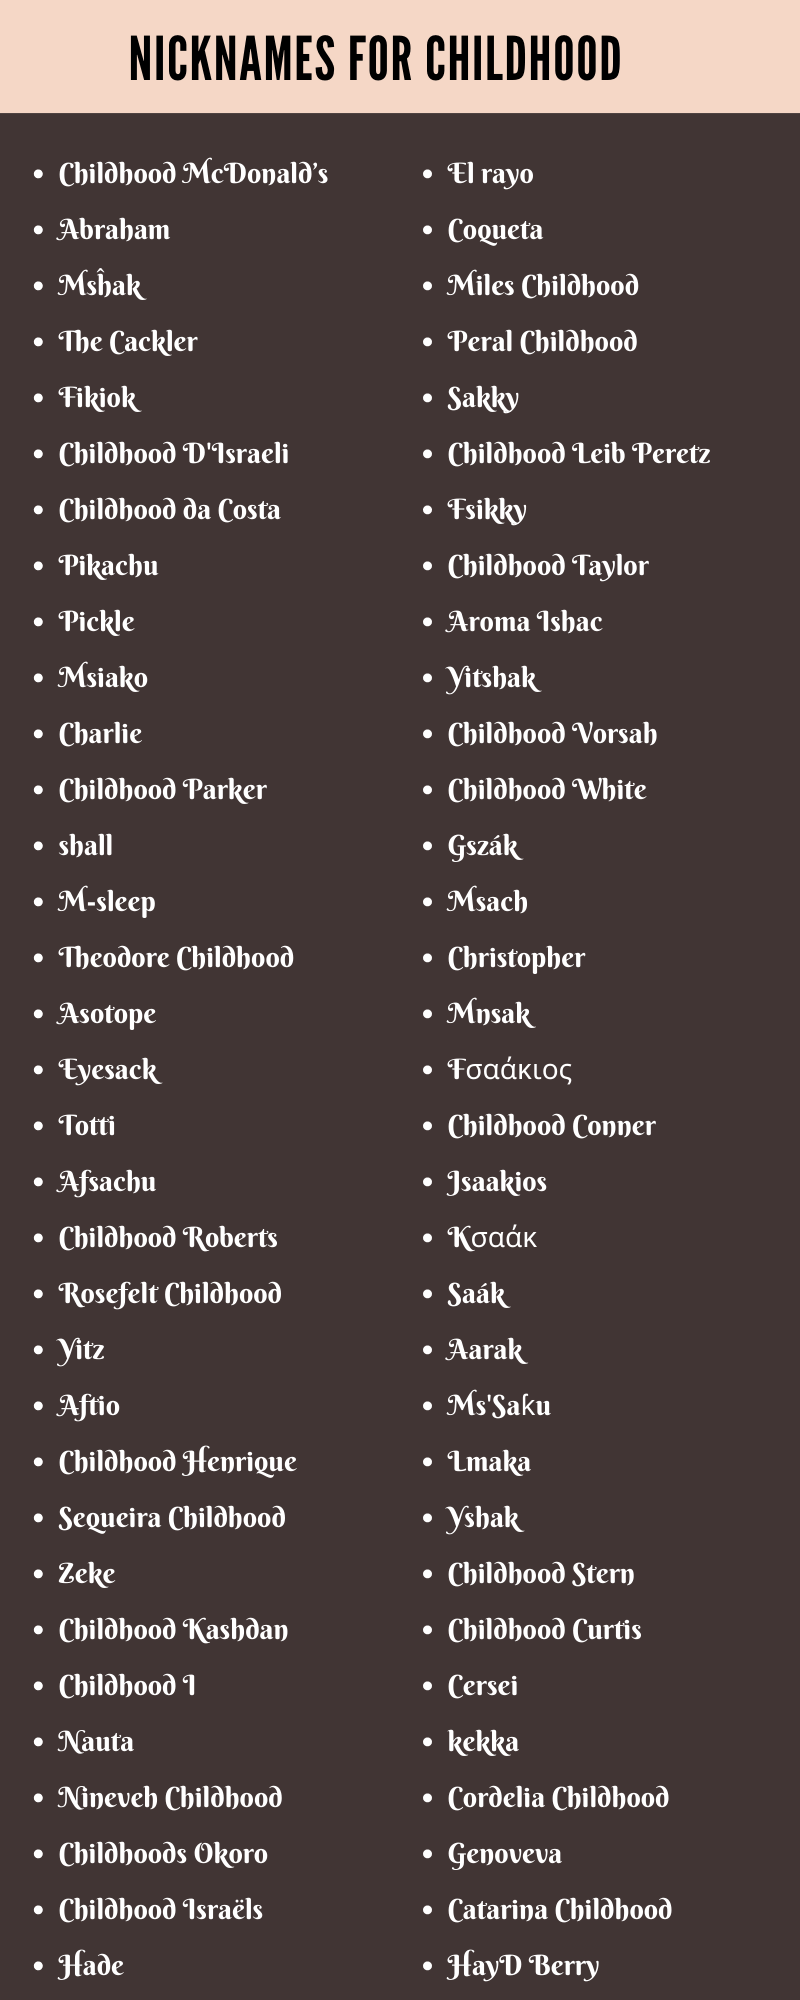 Nicknames for Childhood